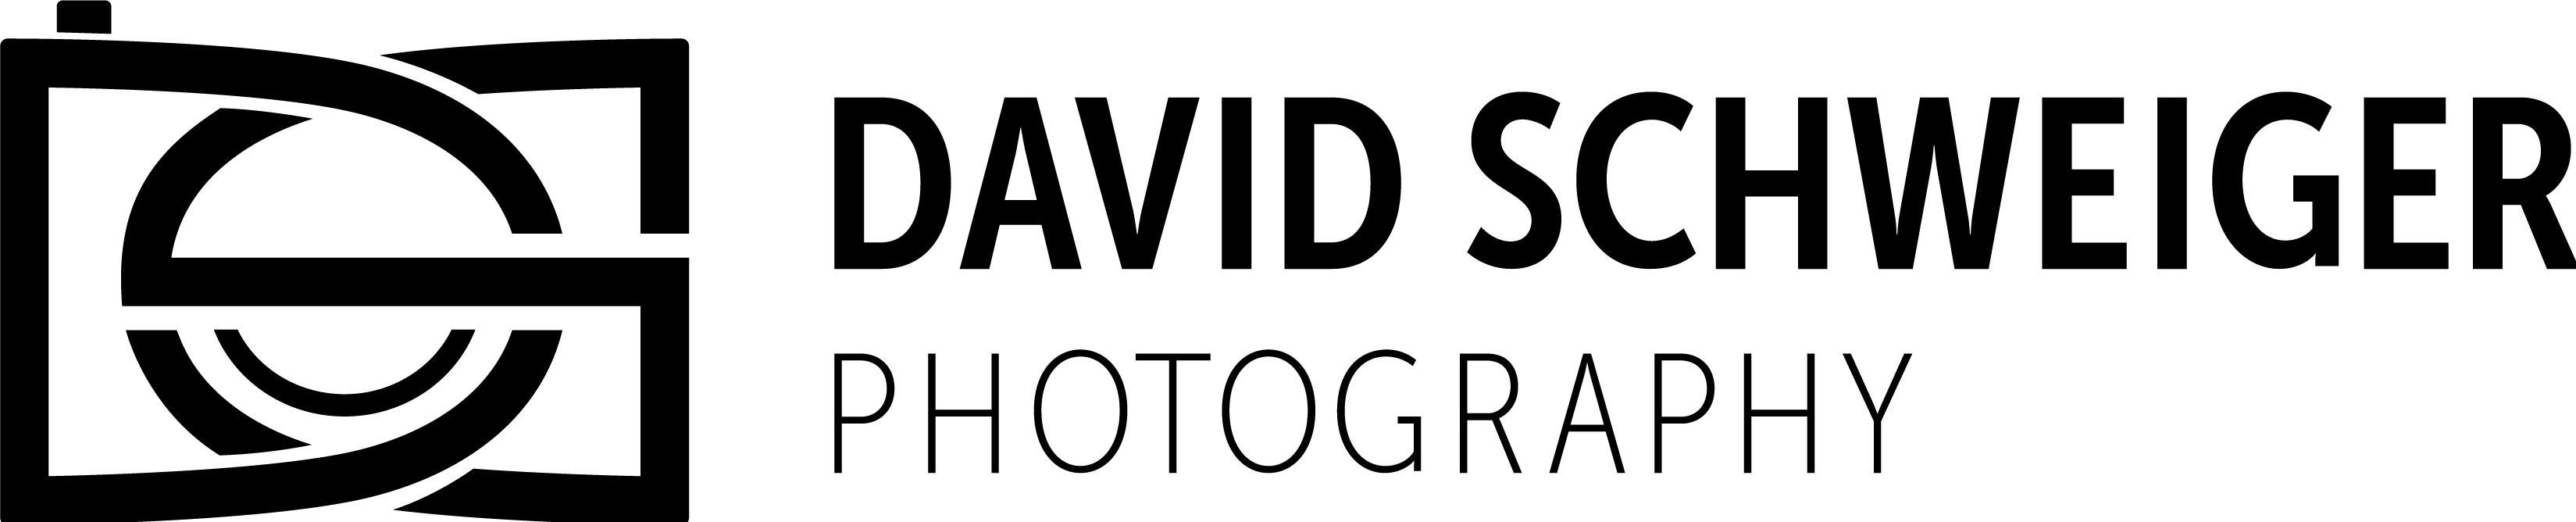 David Schweiger